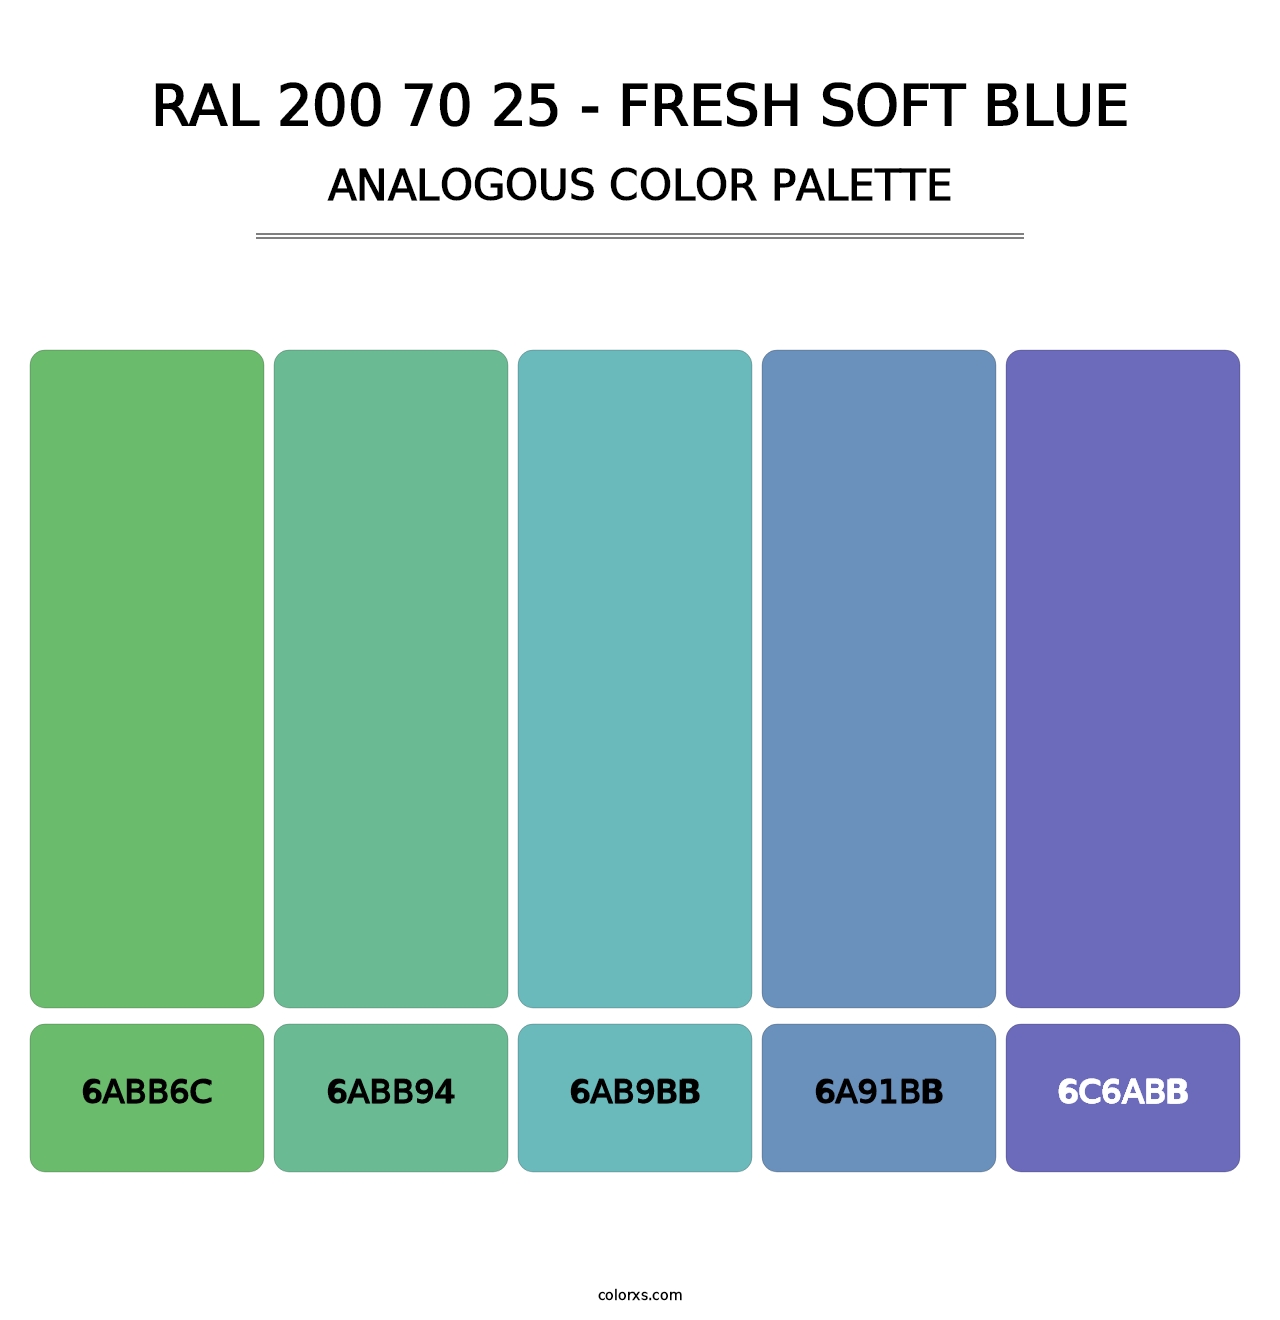 RAL 200 70 25 - Fresh Soft Blue - Analogous Color Palette